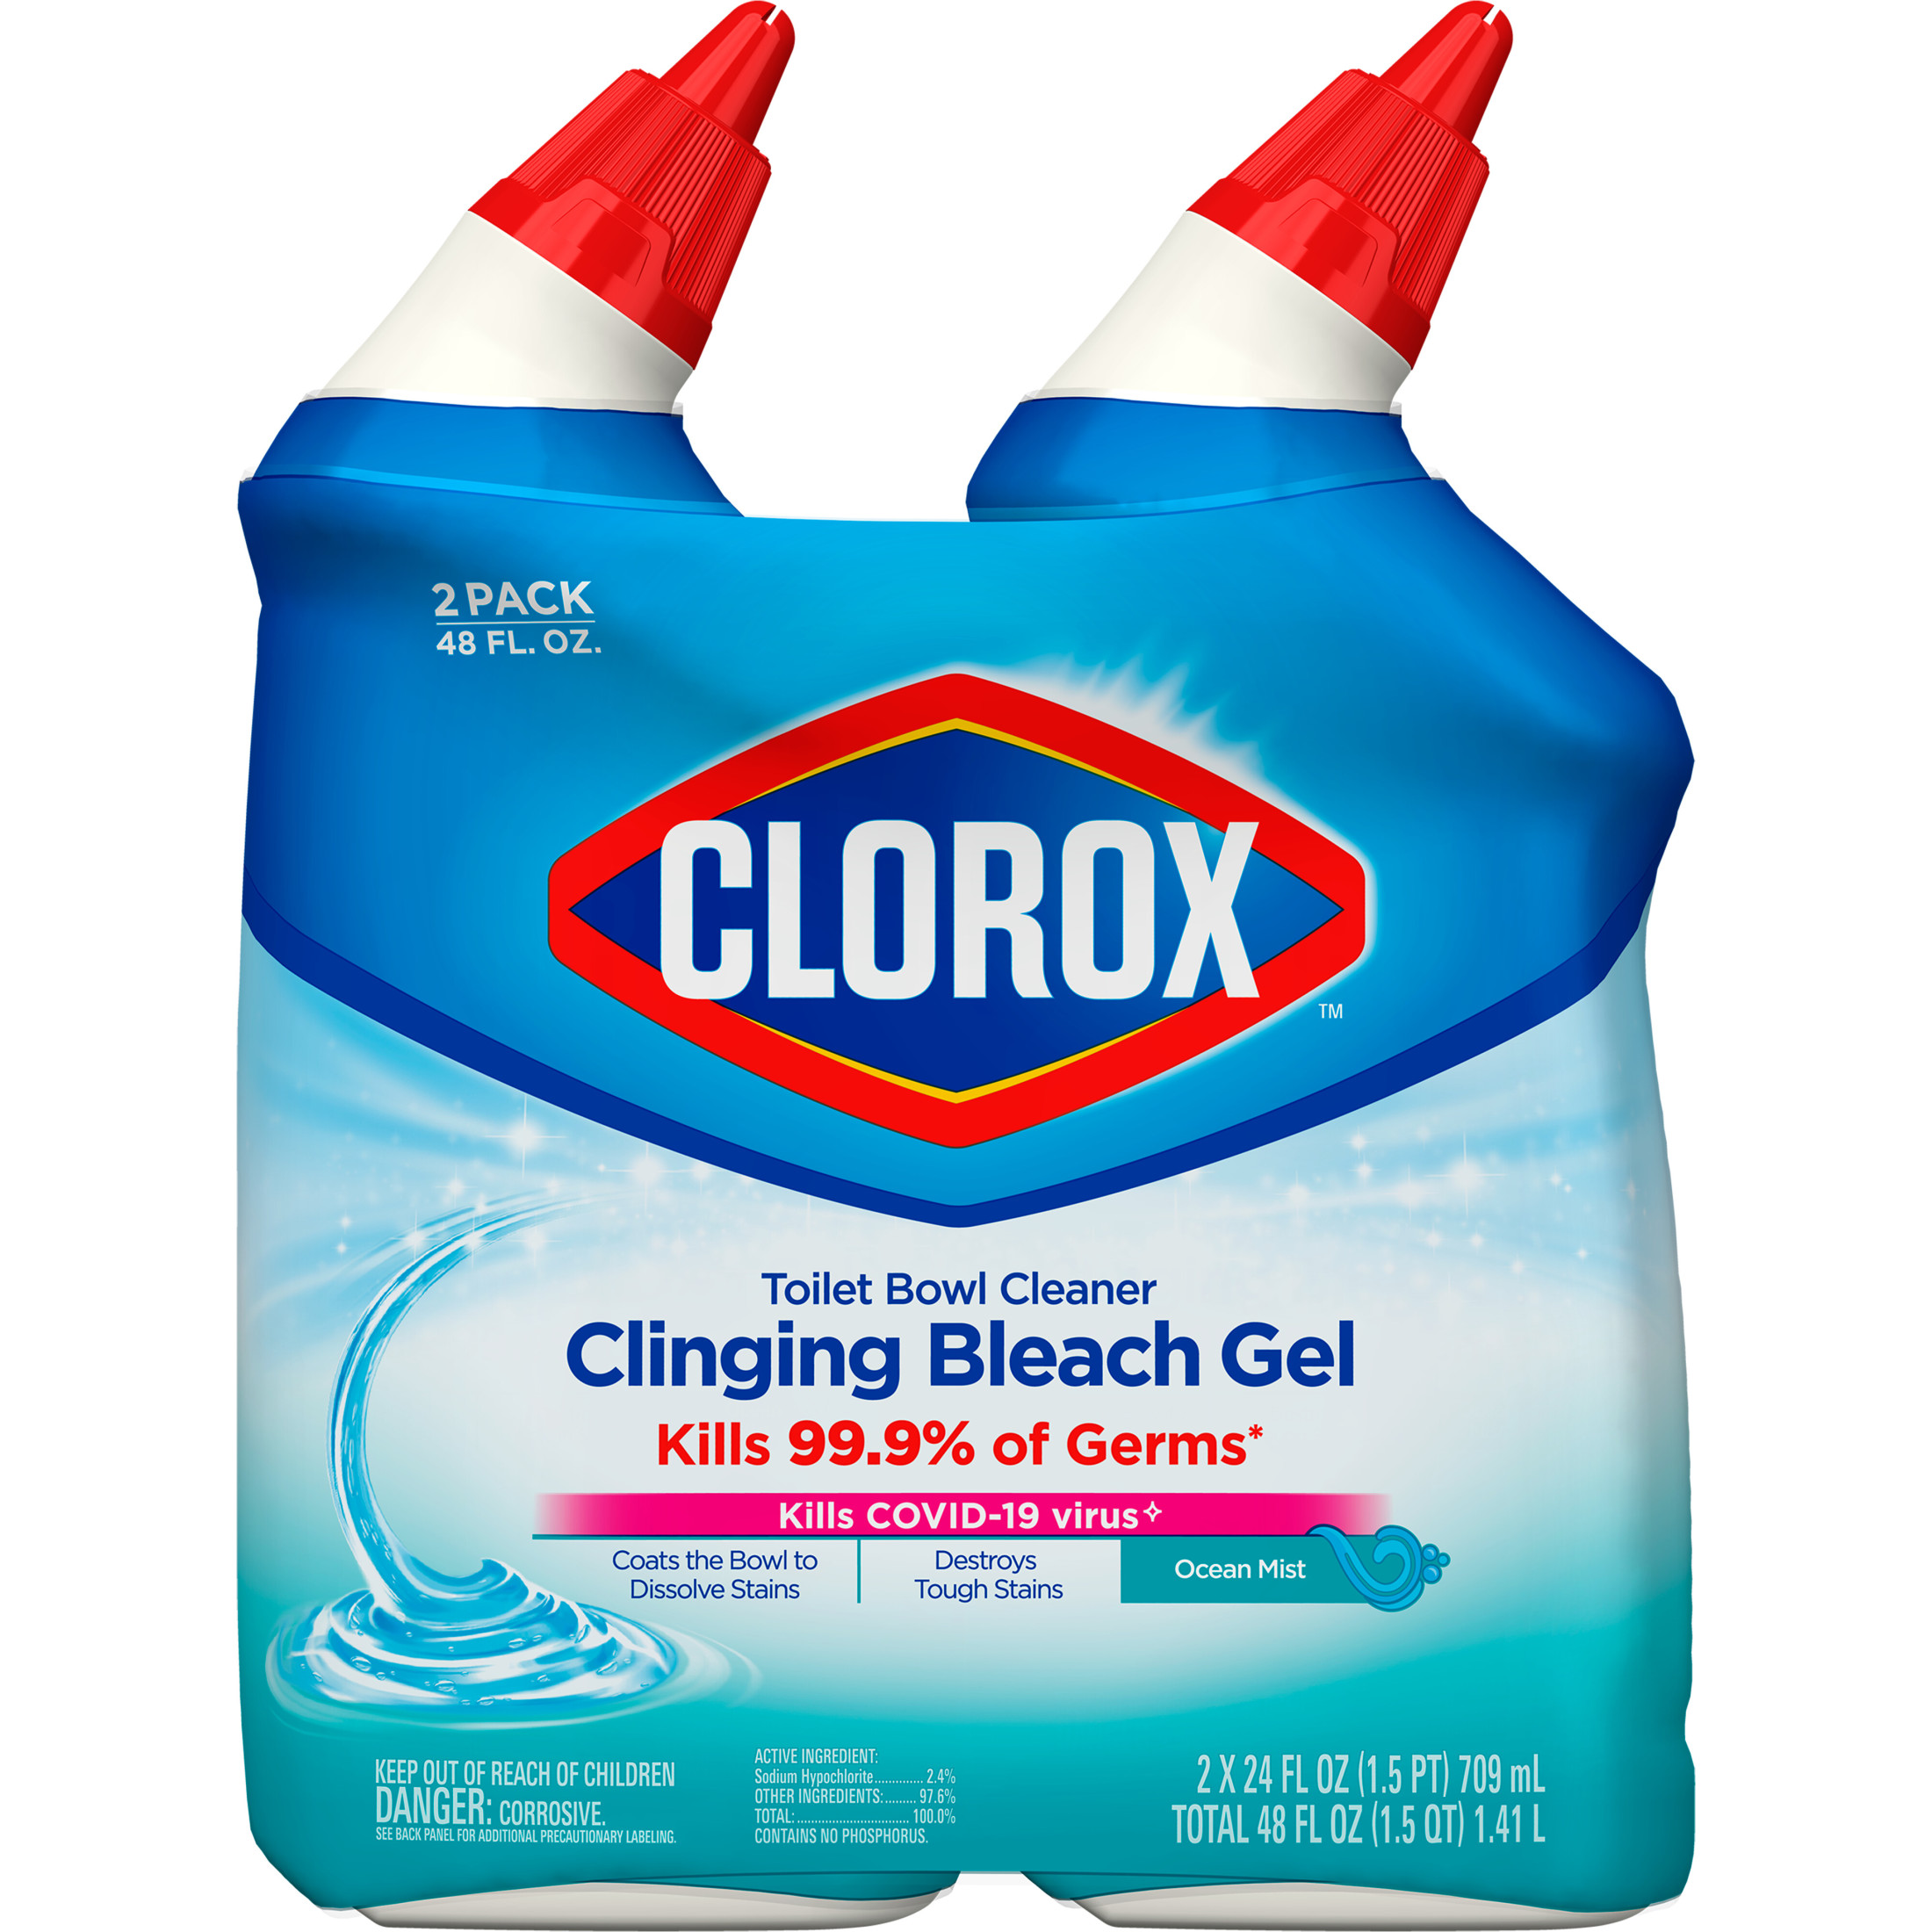 Clorox Toilet Bowl Cleaner Clinging Bleach Gel, Ocean Mist, 24 fl oz, 2 Pack - image 2 of 10